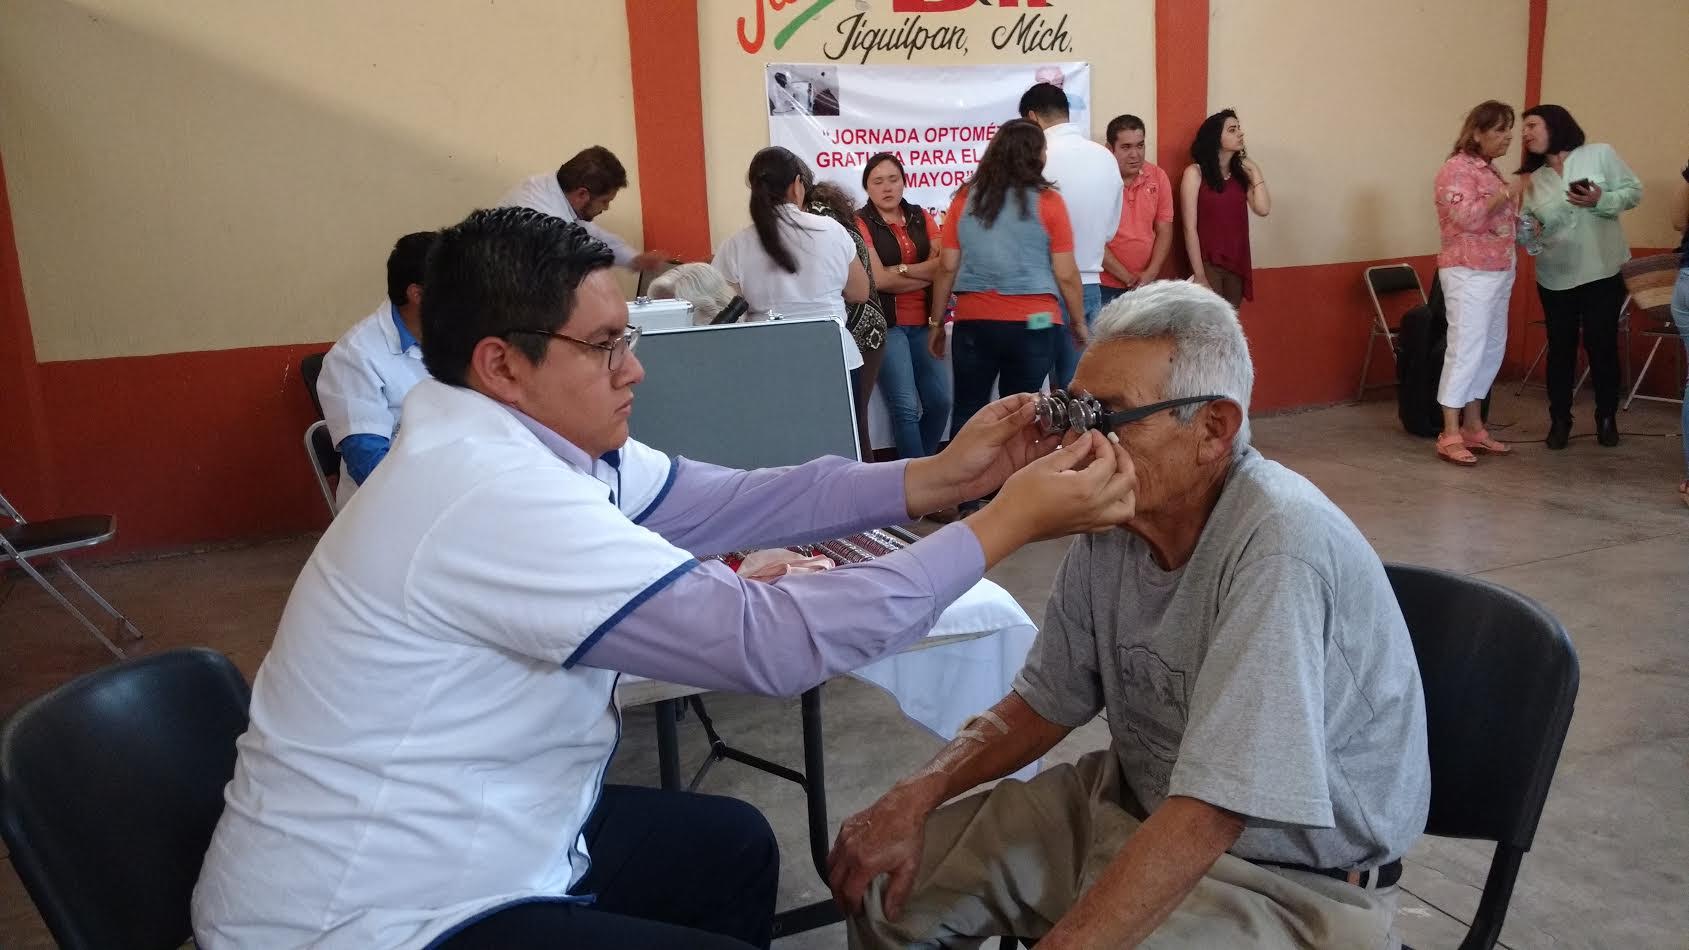 Recibieron más de 100 adultos mayores examen optométrico en ... - Quadratín Michoacán